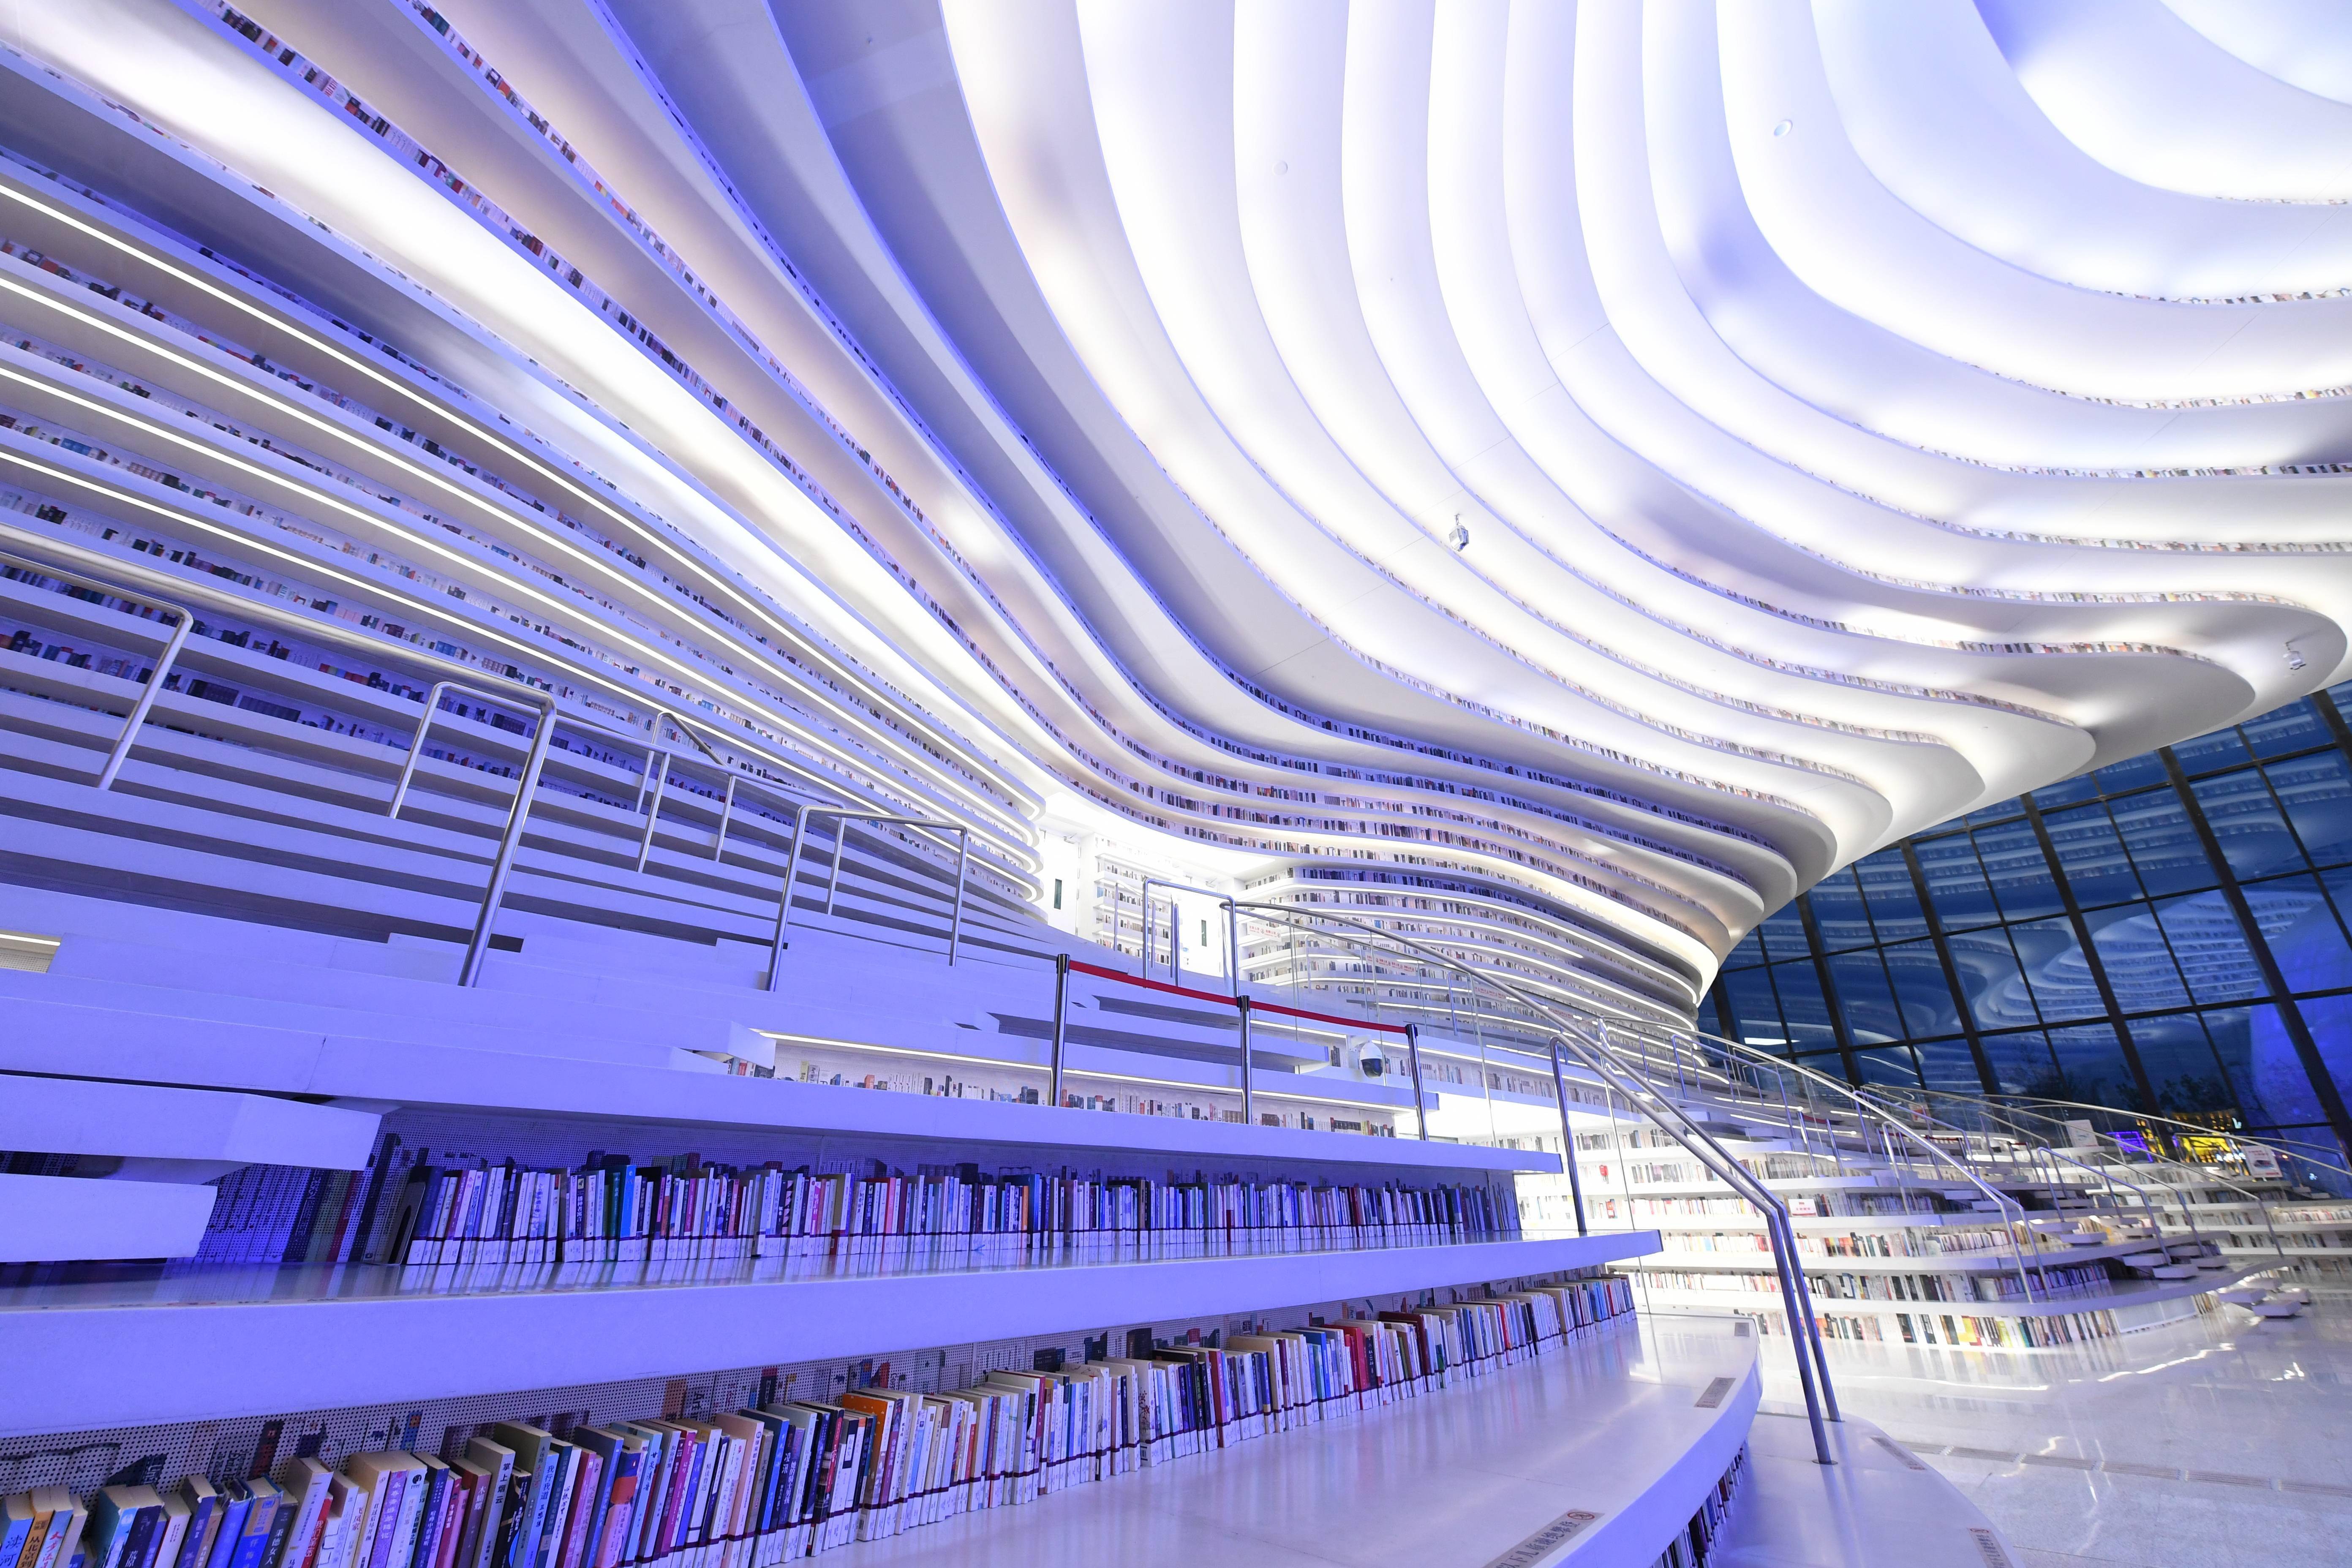 有着"滨海之眼"之称的滨海新区图书馆位于天津滨海文化中心,于2017年